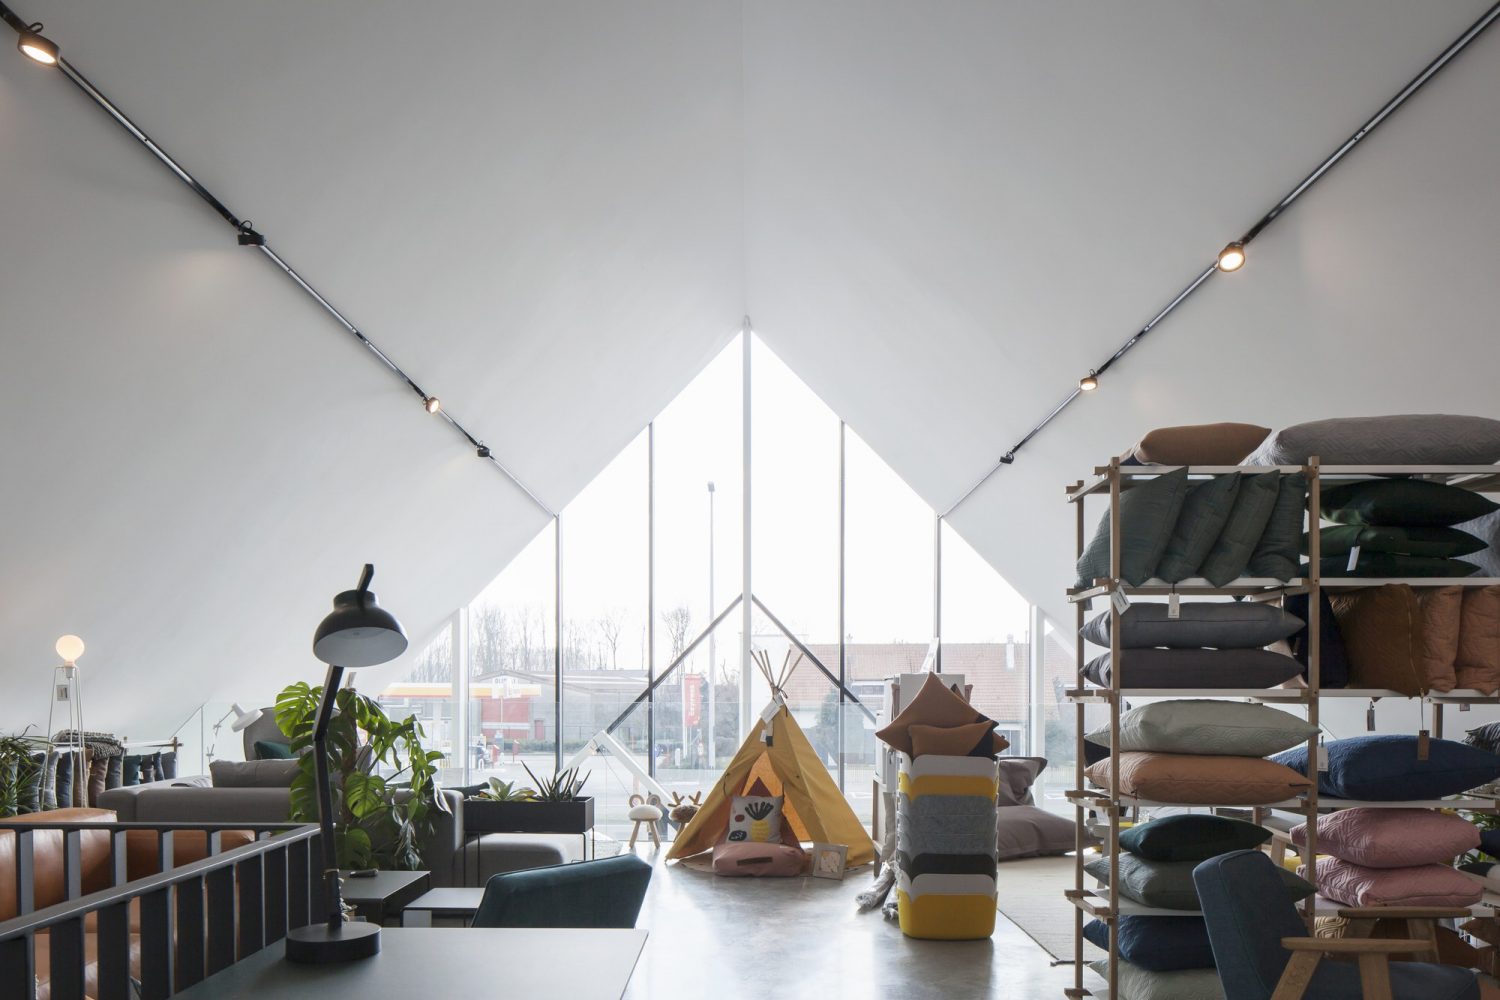 Drongen Furniture Store by WE-S architecten